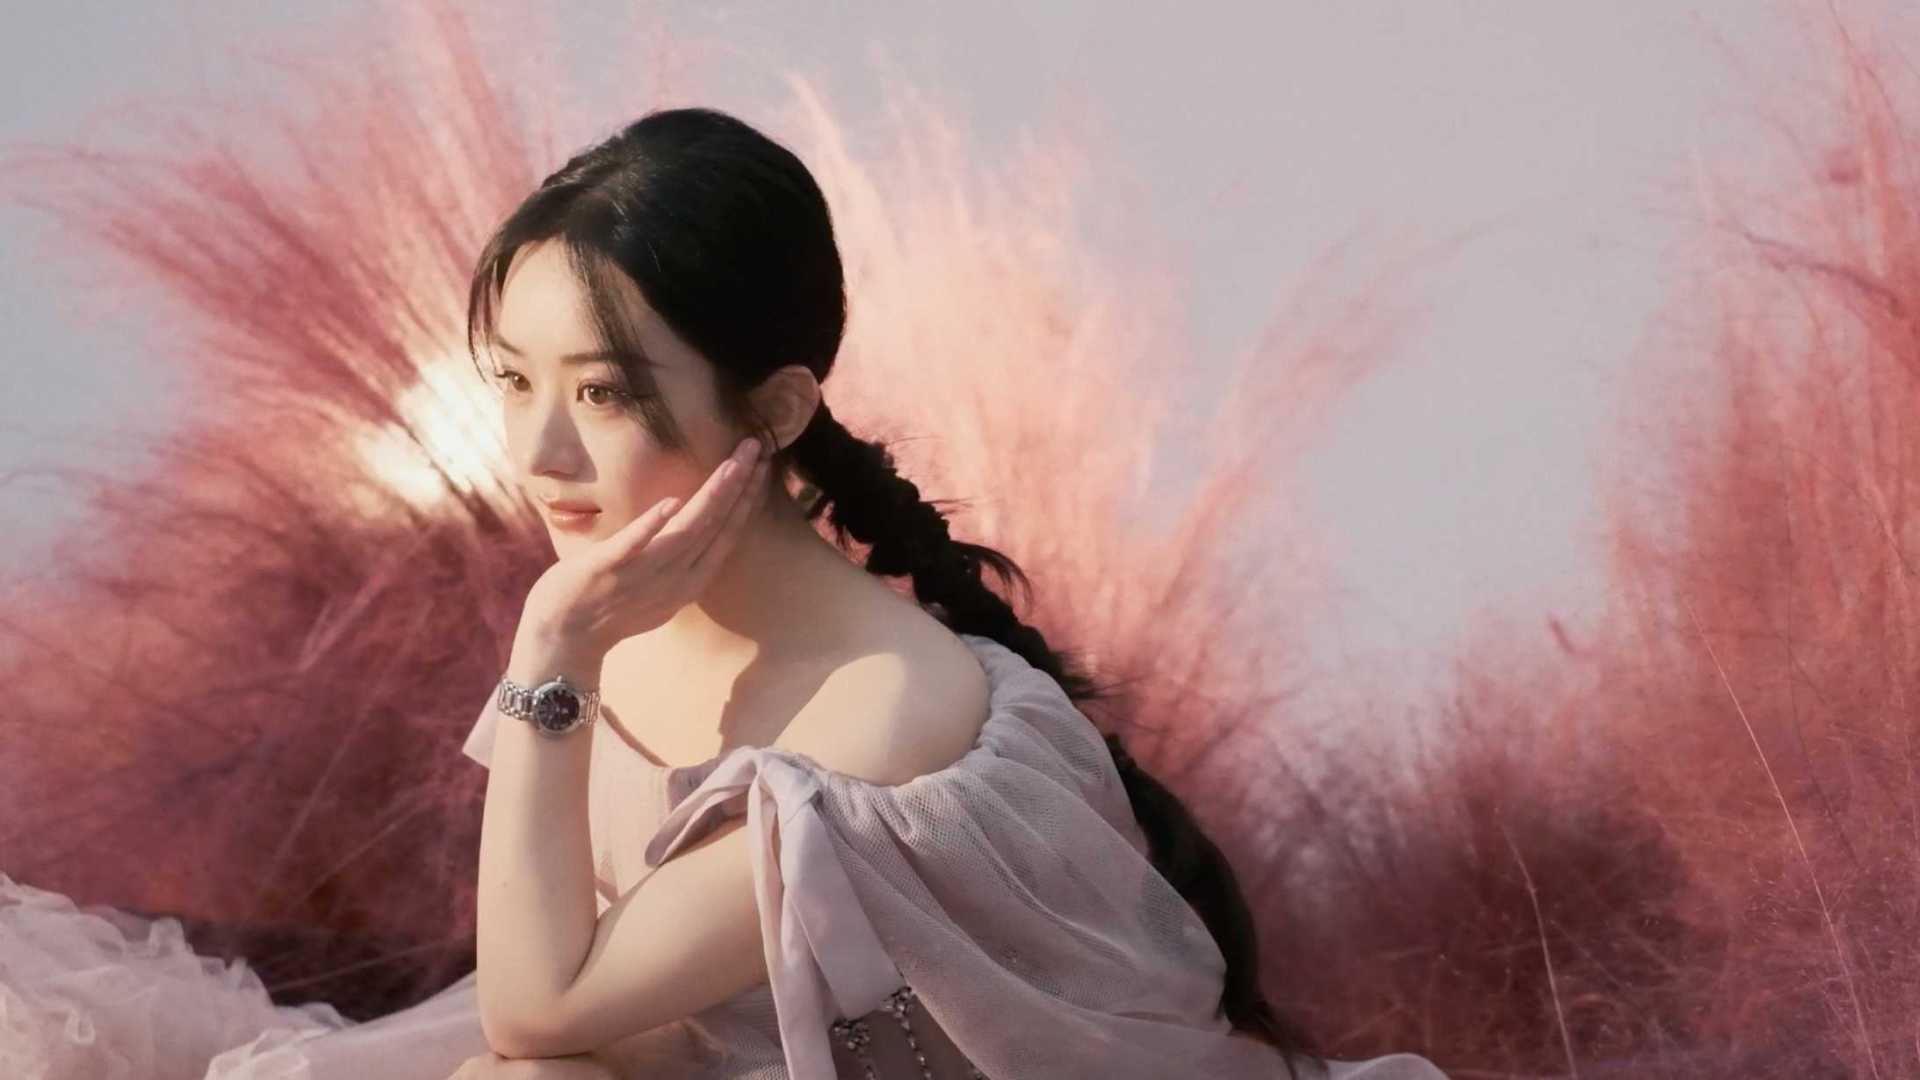 时尚芭莎 X 赵丽颖 四月刊封面视频